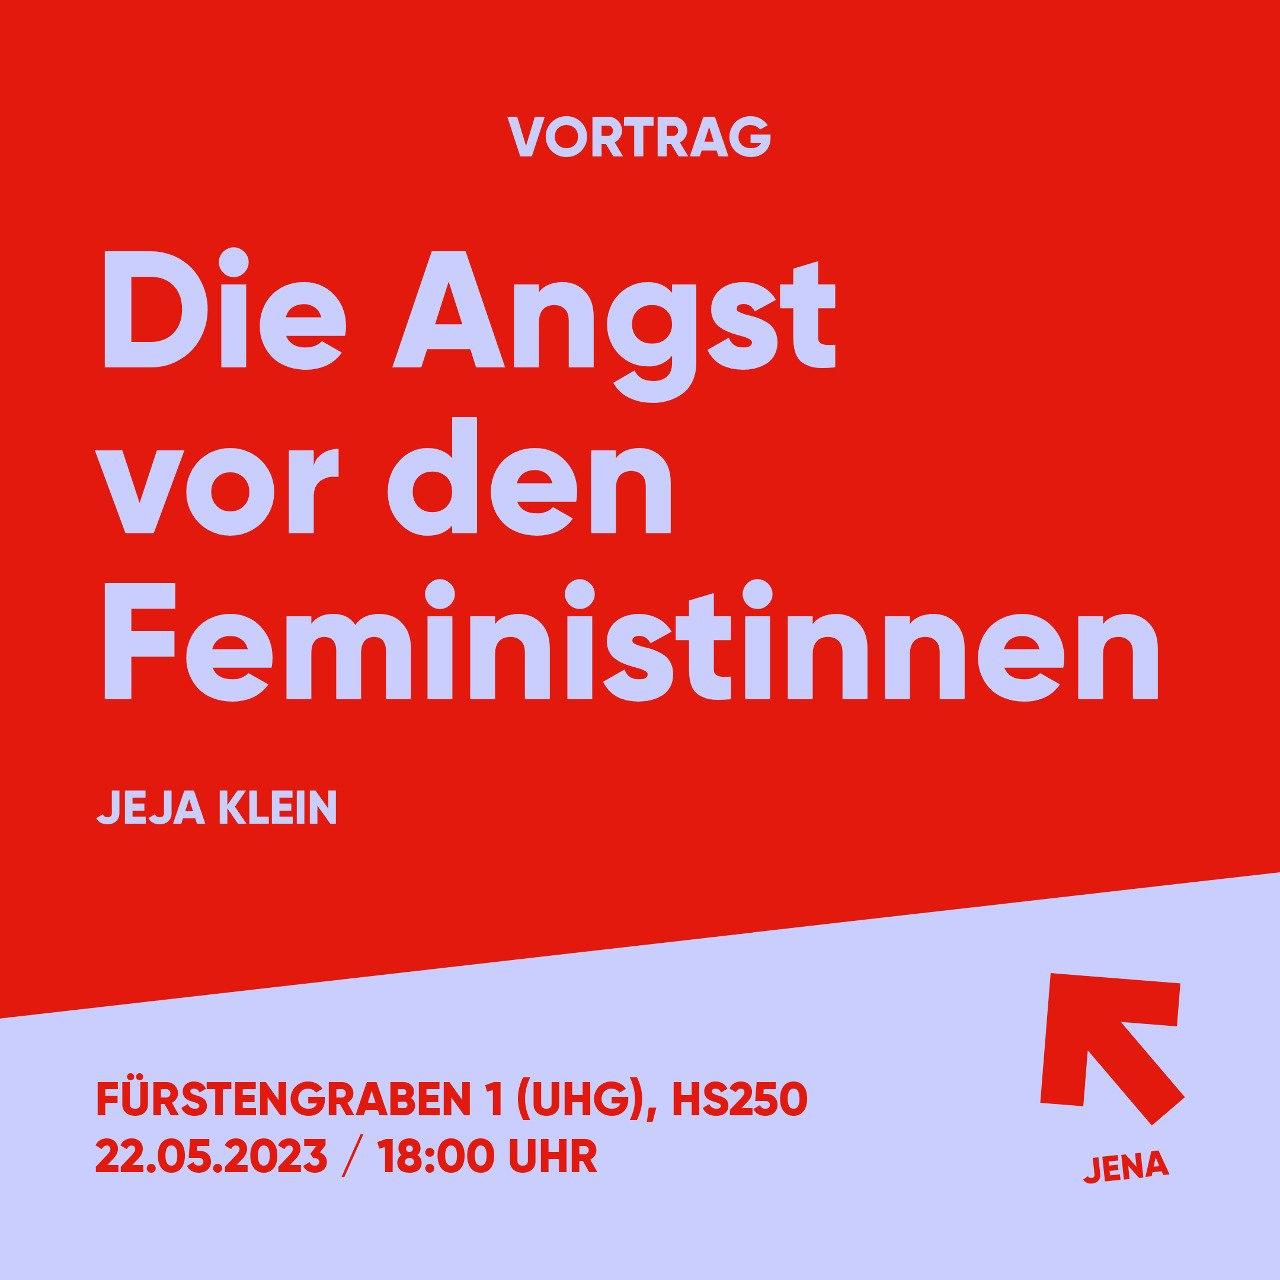 Vortrag mit Jeja Klein: "Die Angst vor den Feministinnen"